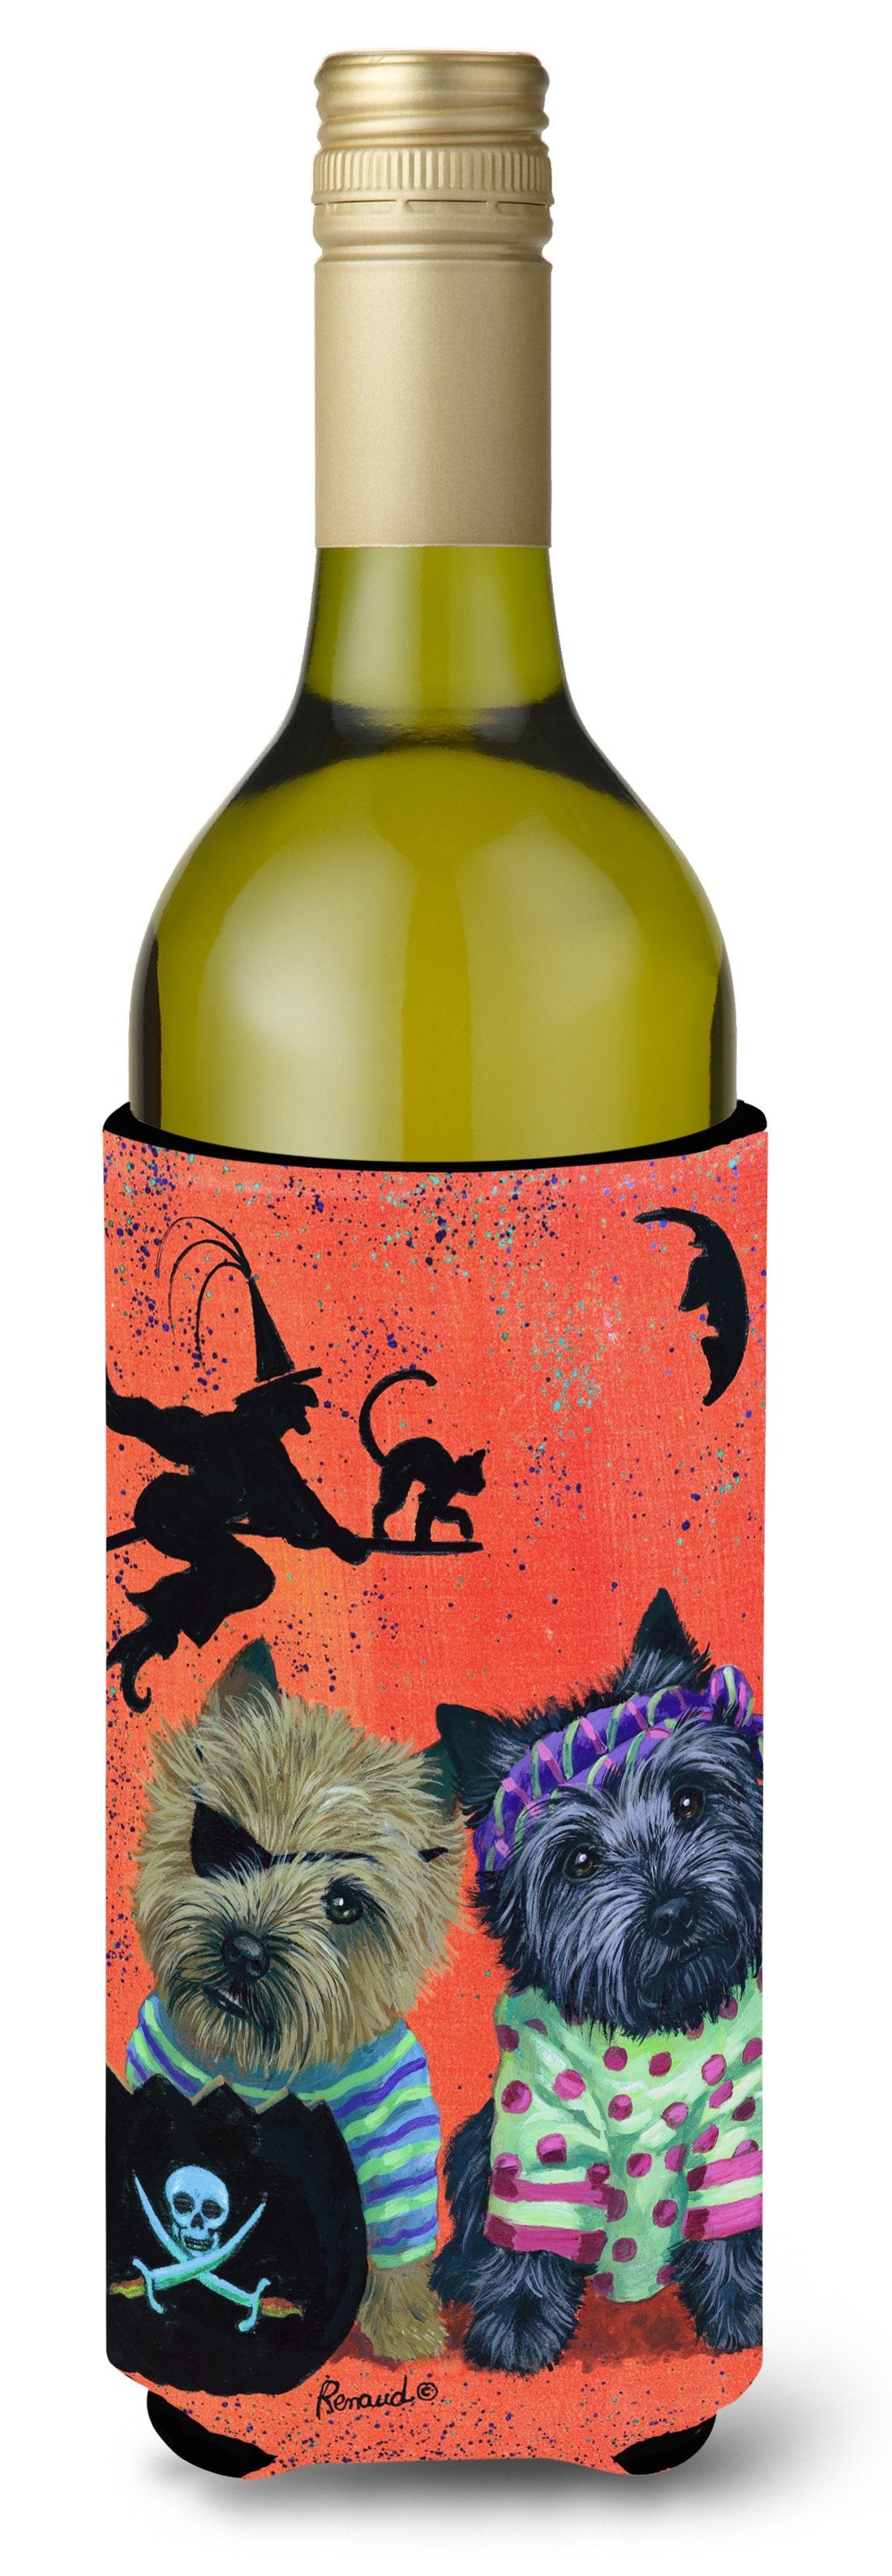 Cairn Terrier Pirates Halloween Wine Bottle Hugger PPP3043LITERK by Caroline's Treasures